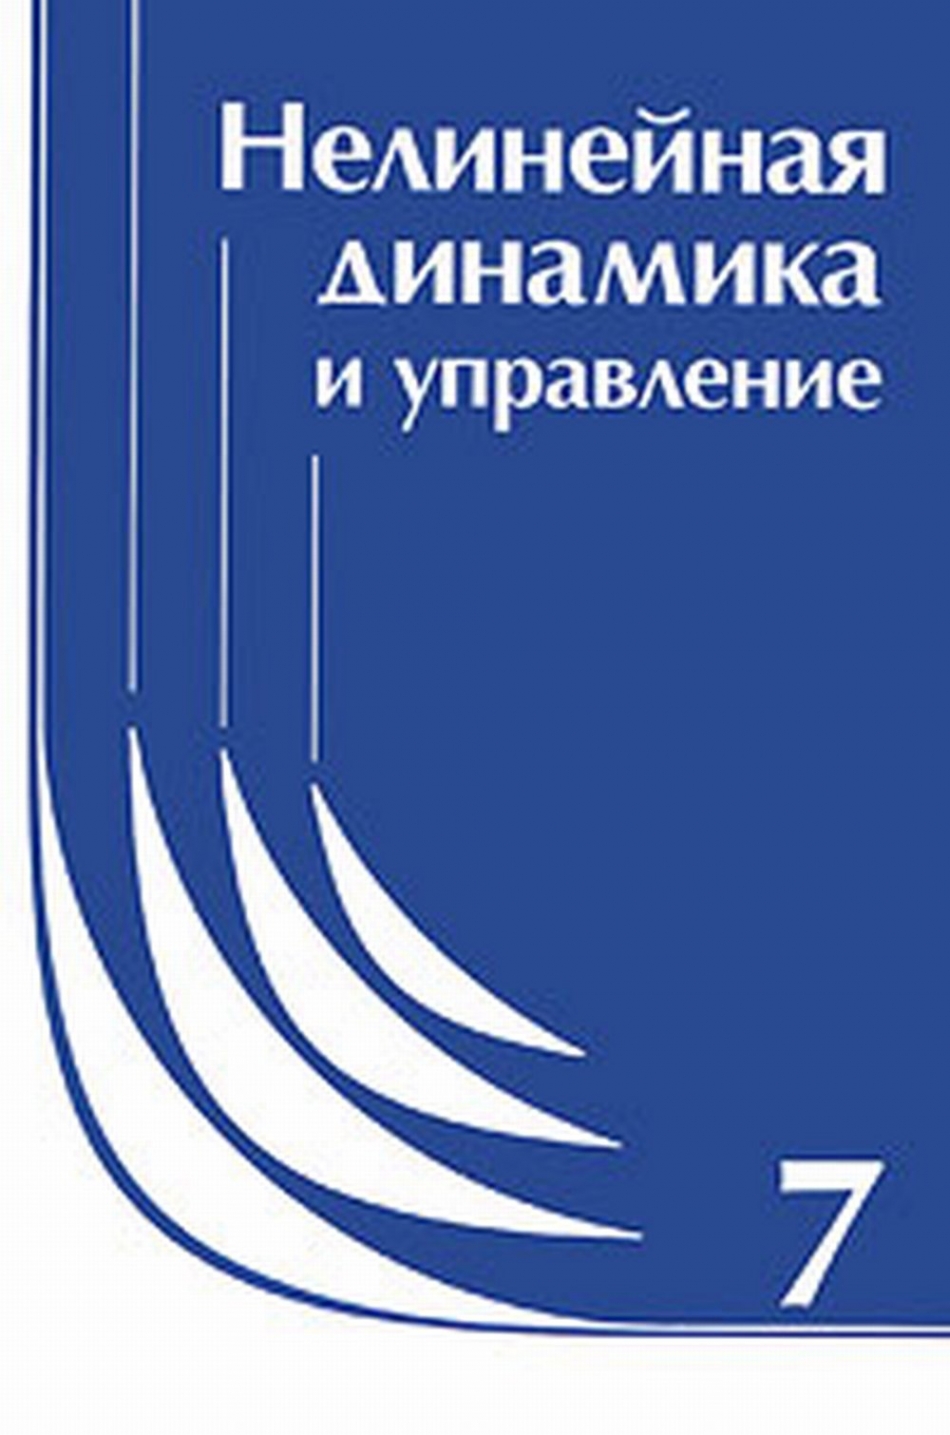 Емельянов С.В., под. ред. Нелинейная динамика и управление: Сборник статей. Вып. 7 